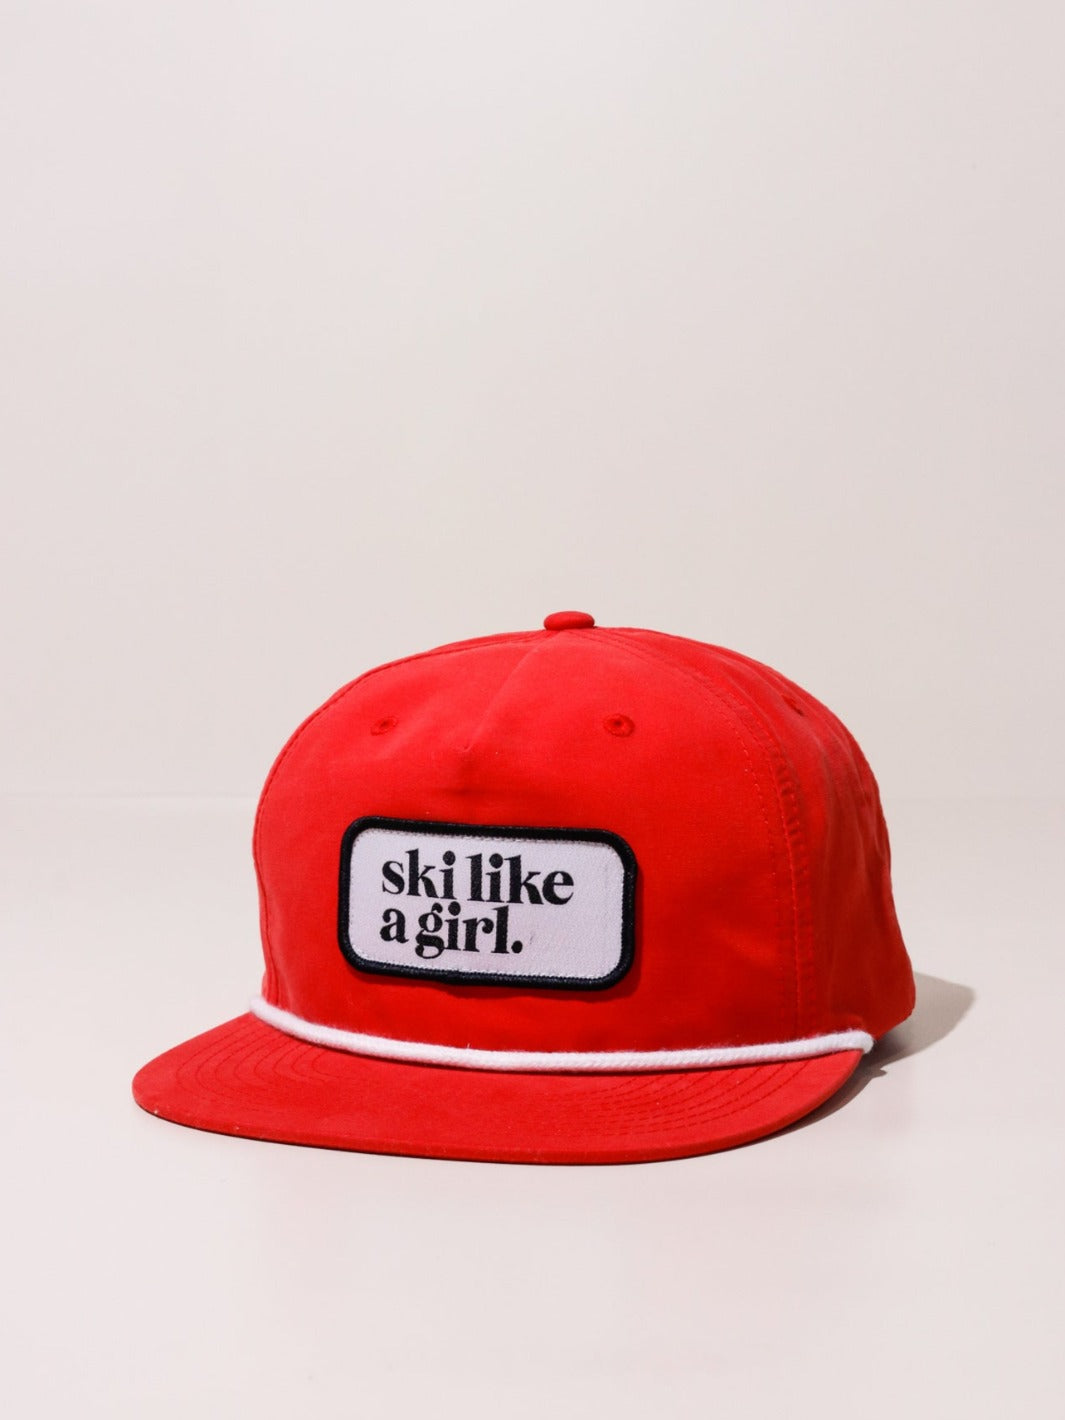 Ski Like a Girl Red Nylon Hat - Heyday